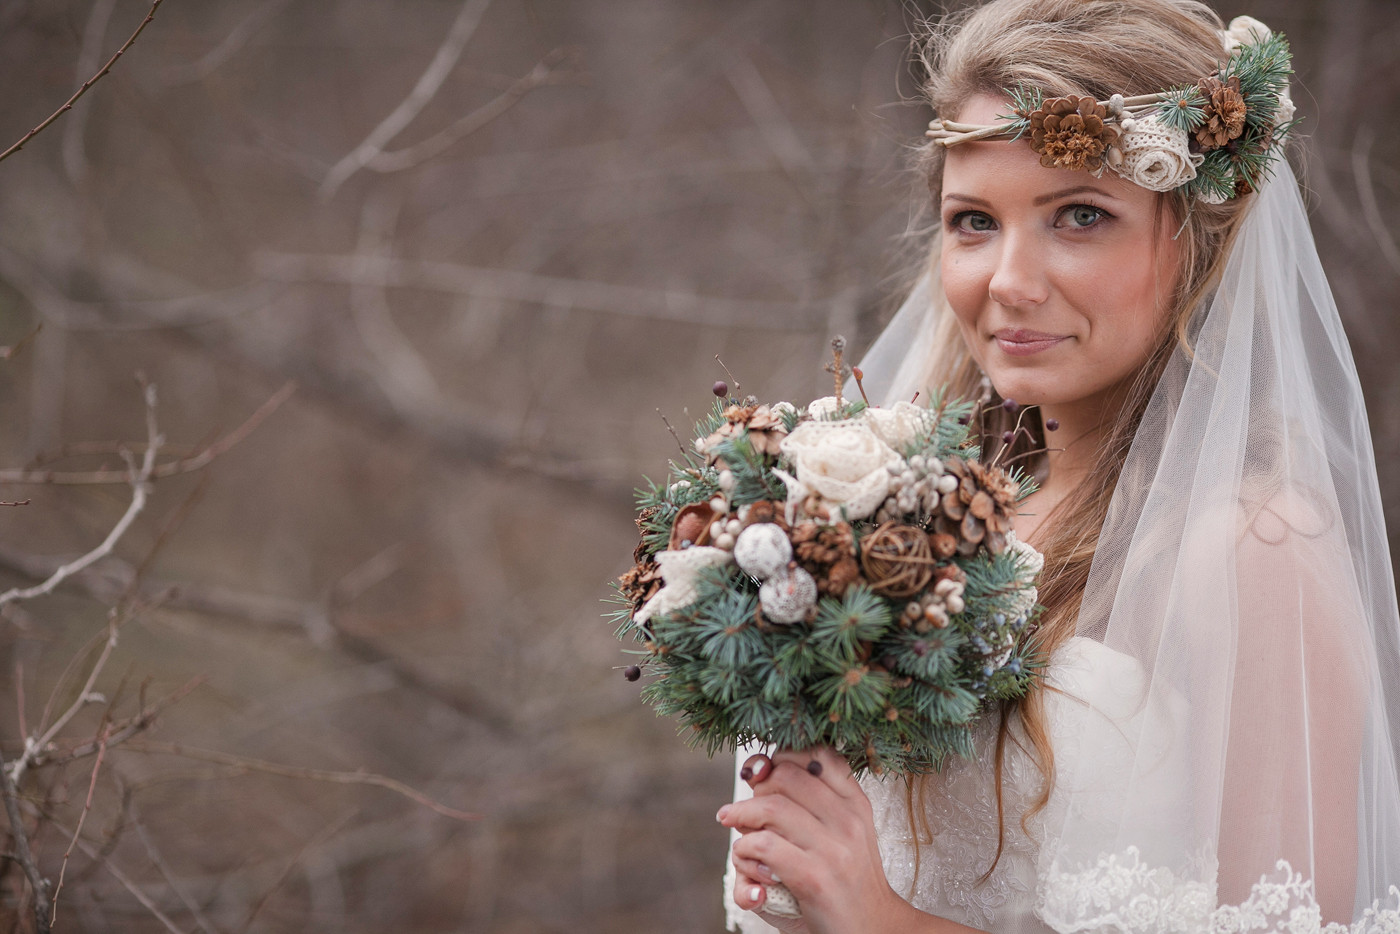 Brautstrauß Winter
 Brautstrauß im Winter – Ideen & Tipps für den Brautstrauß